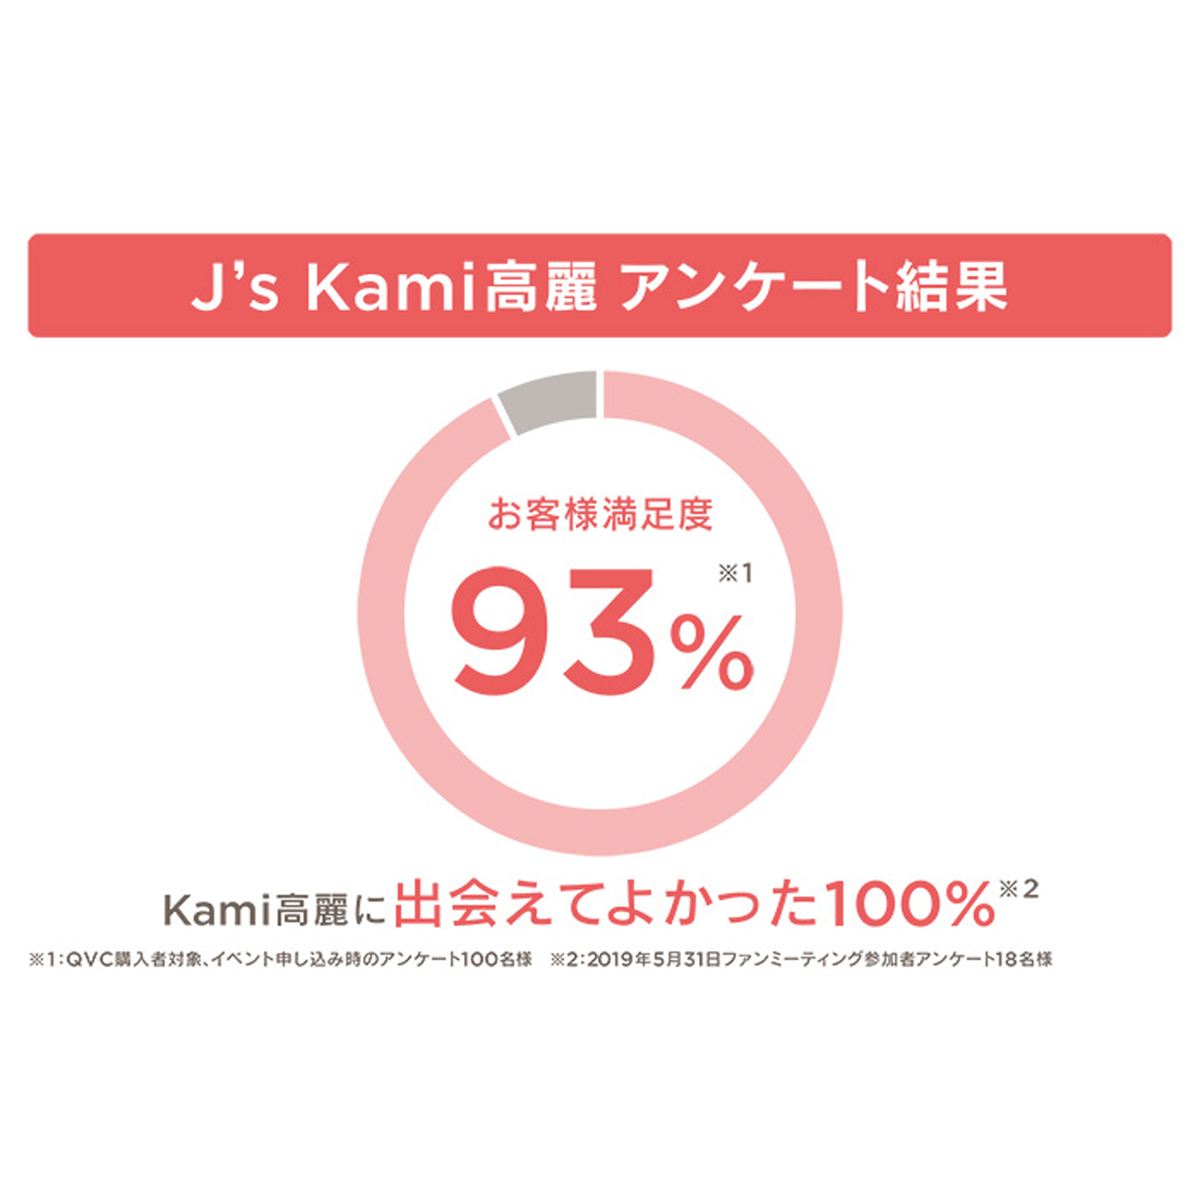 高濃縮紅参サプリメント J’s Kami高麗120粒 - QVC.jp